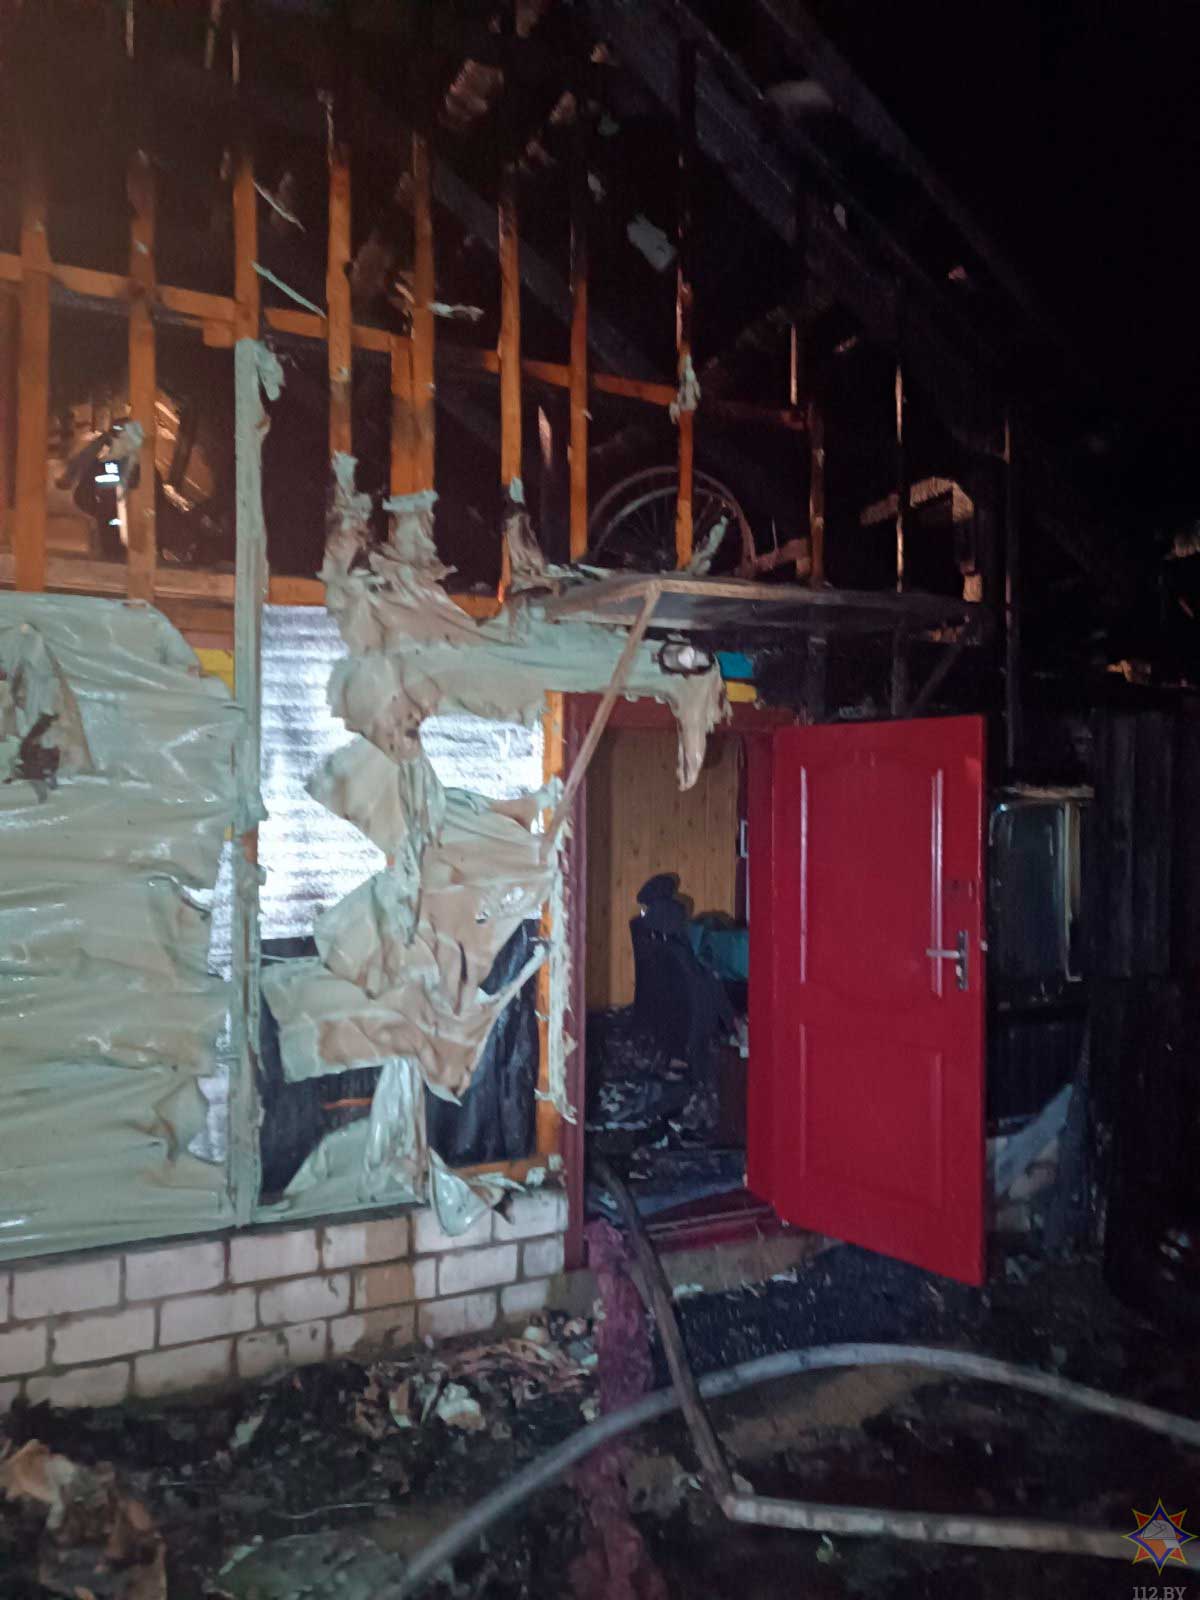 В Черикове от работы сварочного аппарата в гараже случился пожар, который перекинулся на дом. Пострадал 58-летний хозяин